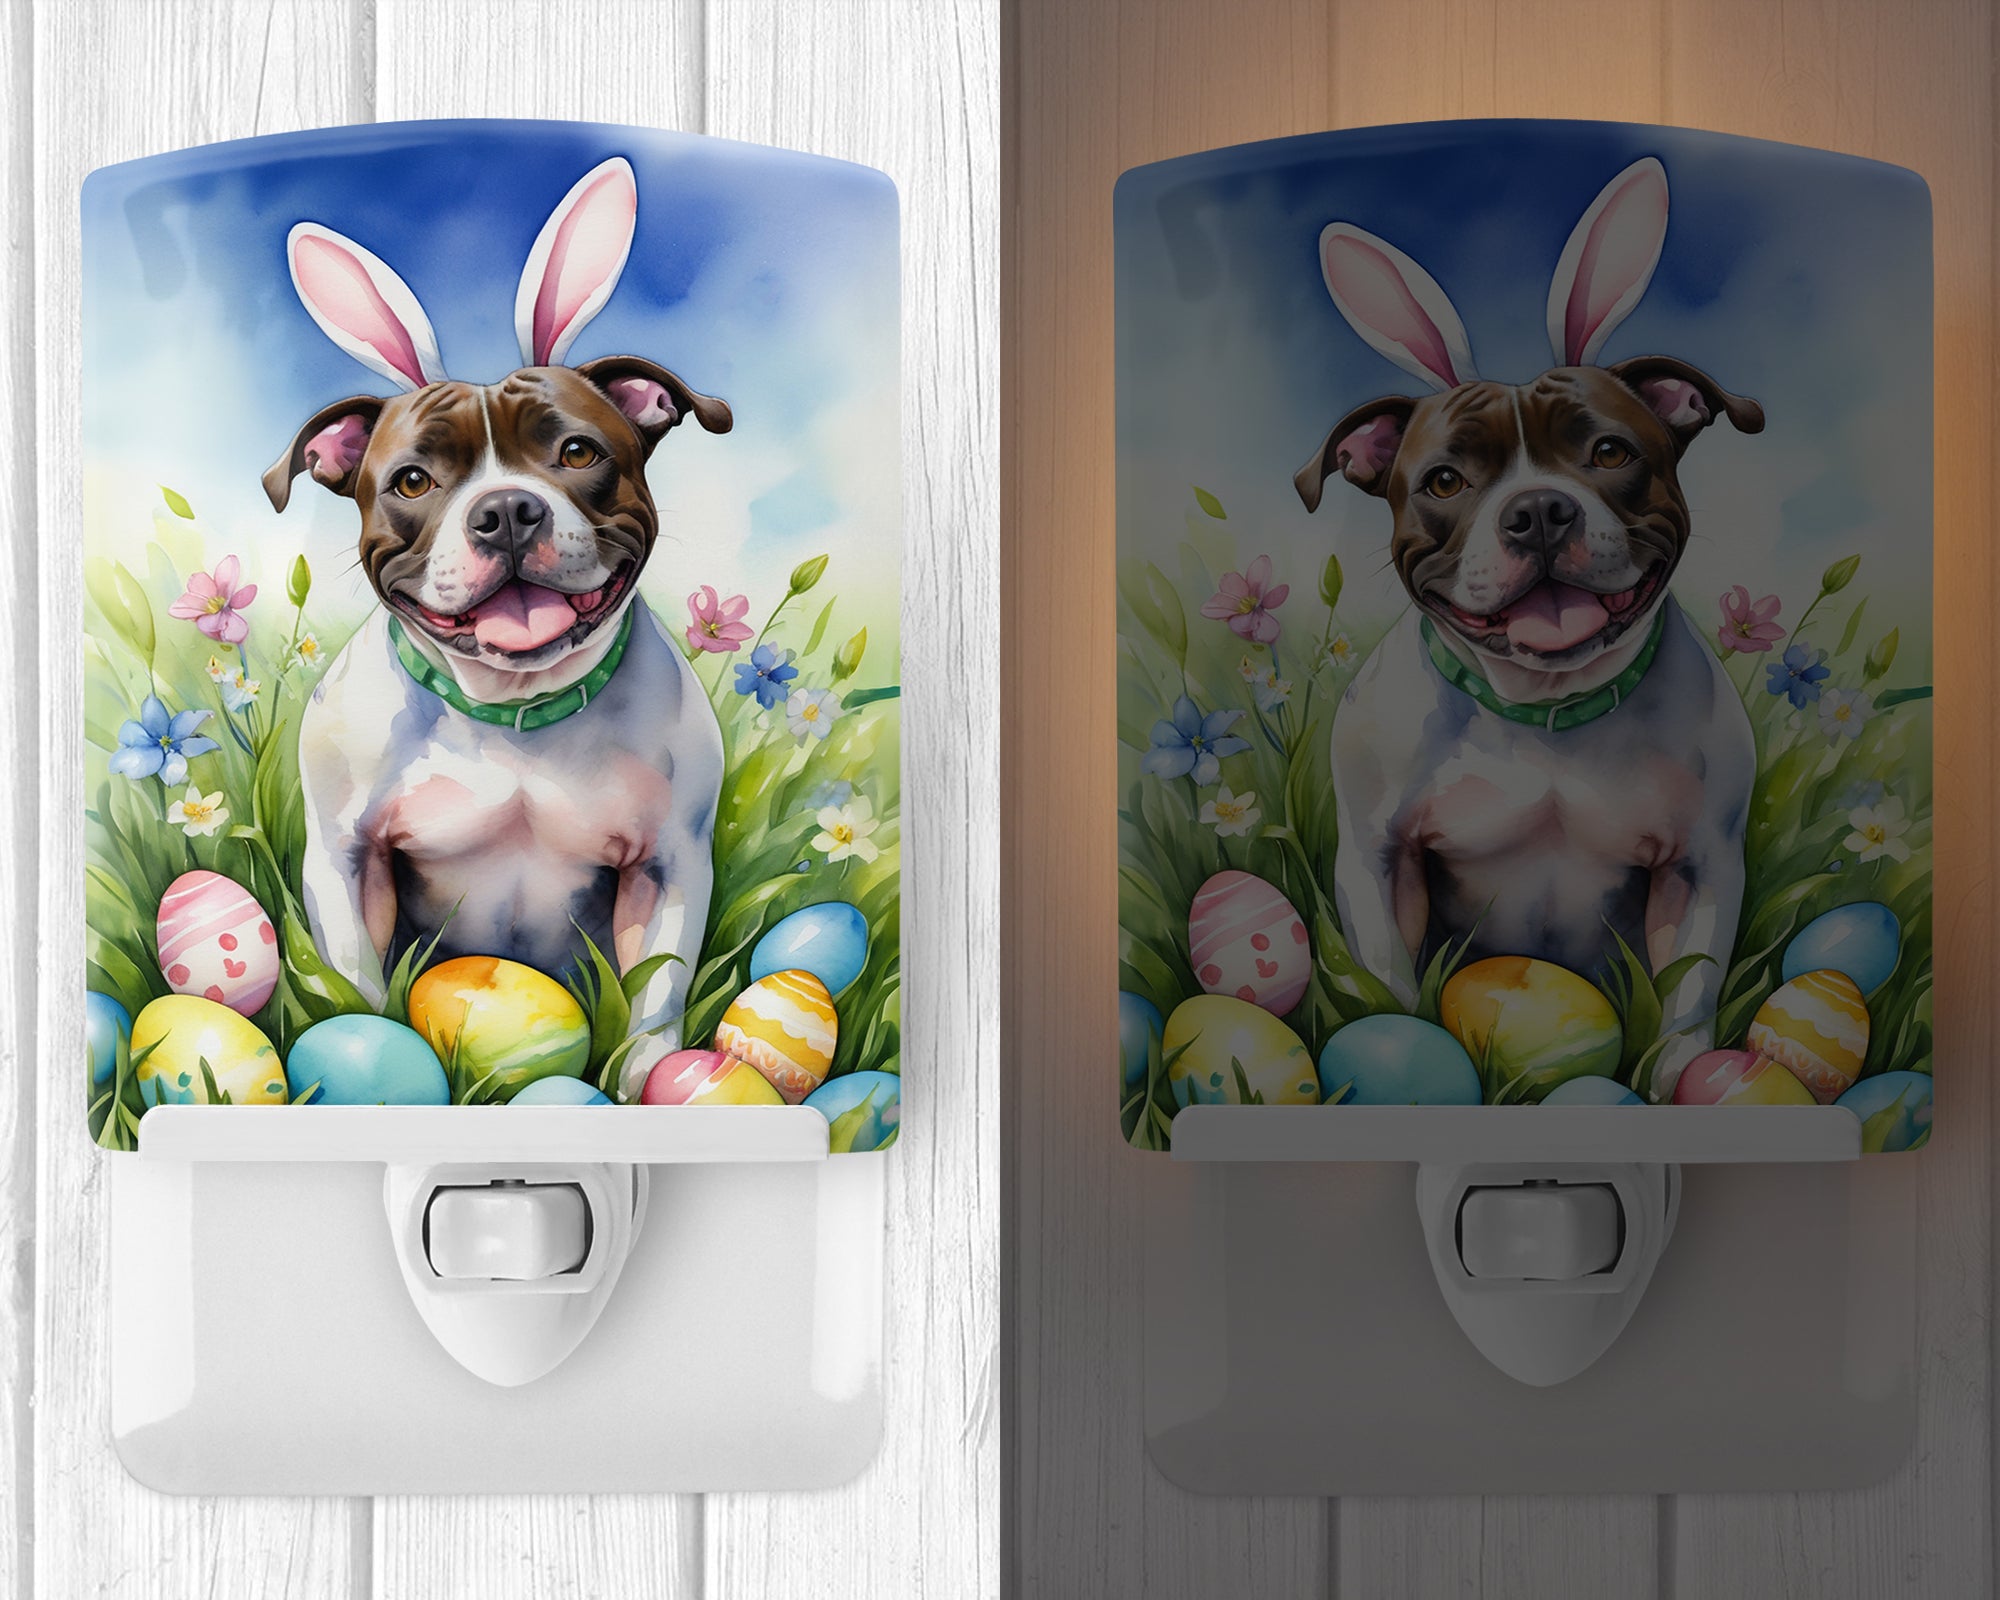 Staffordshire Bull Terrier Easter Egg Hunt Ceramic Night Light